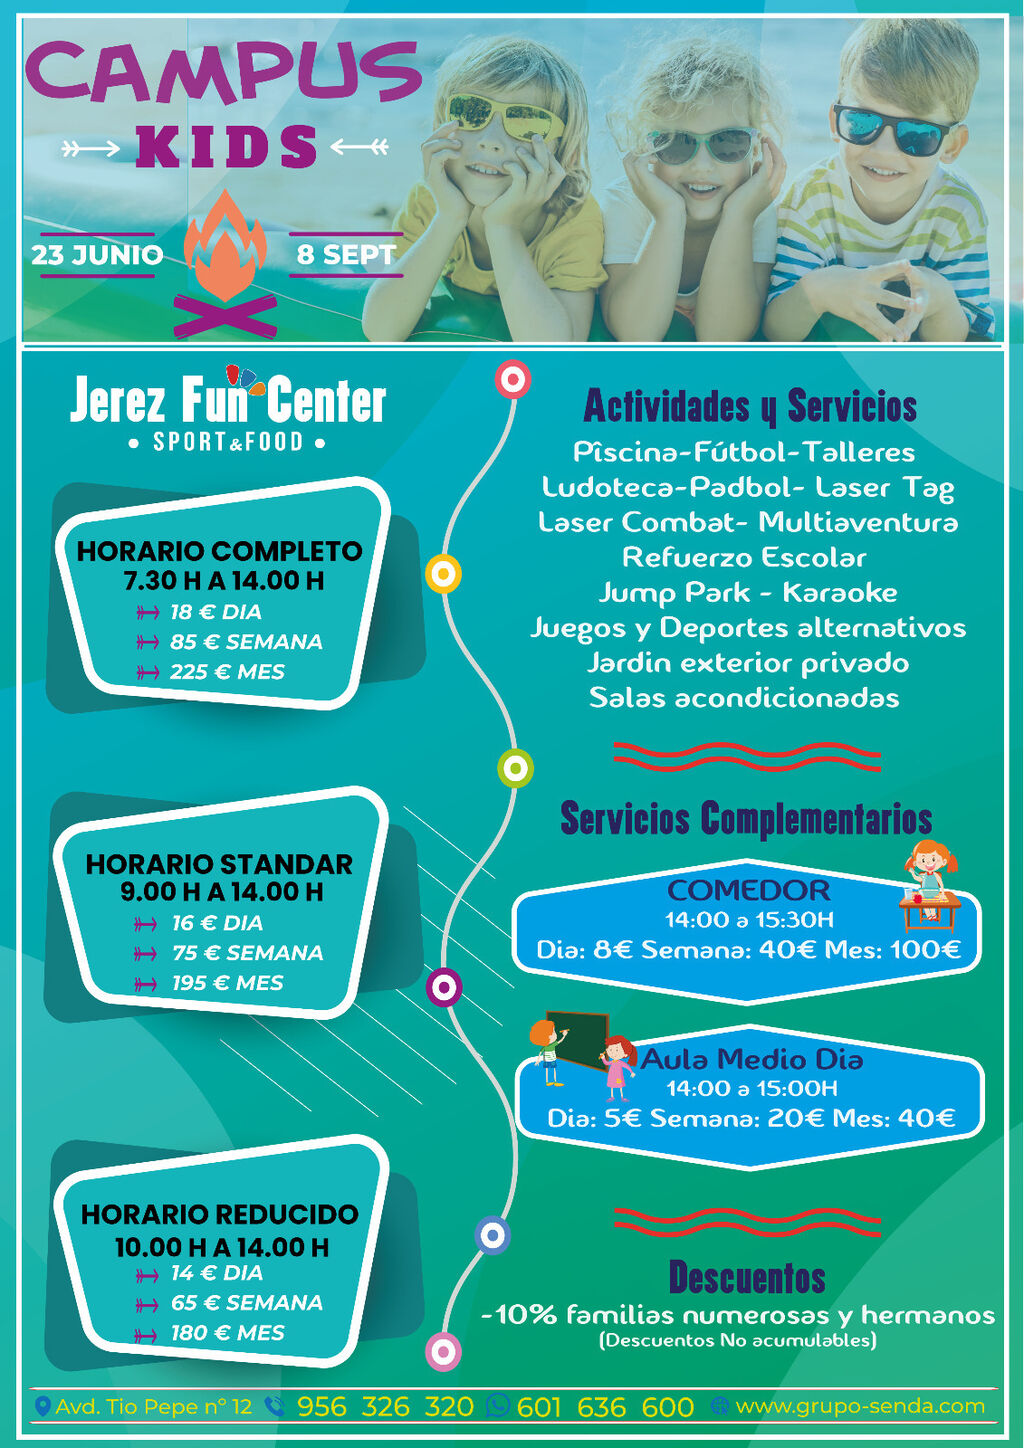 Jerez Fun Center.